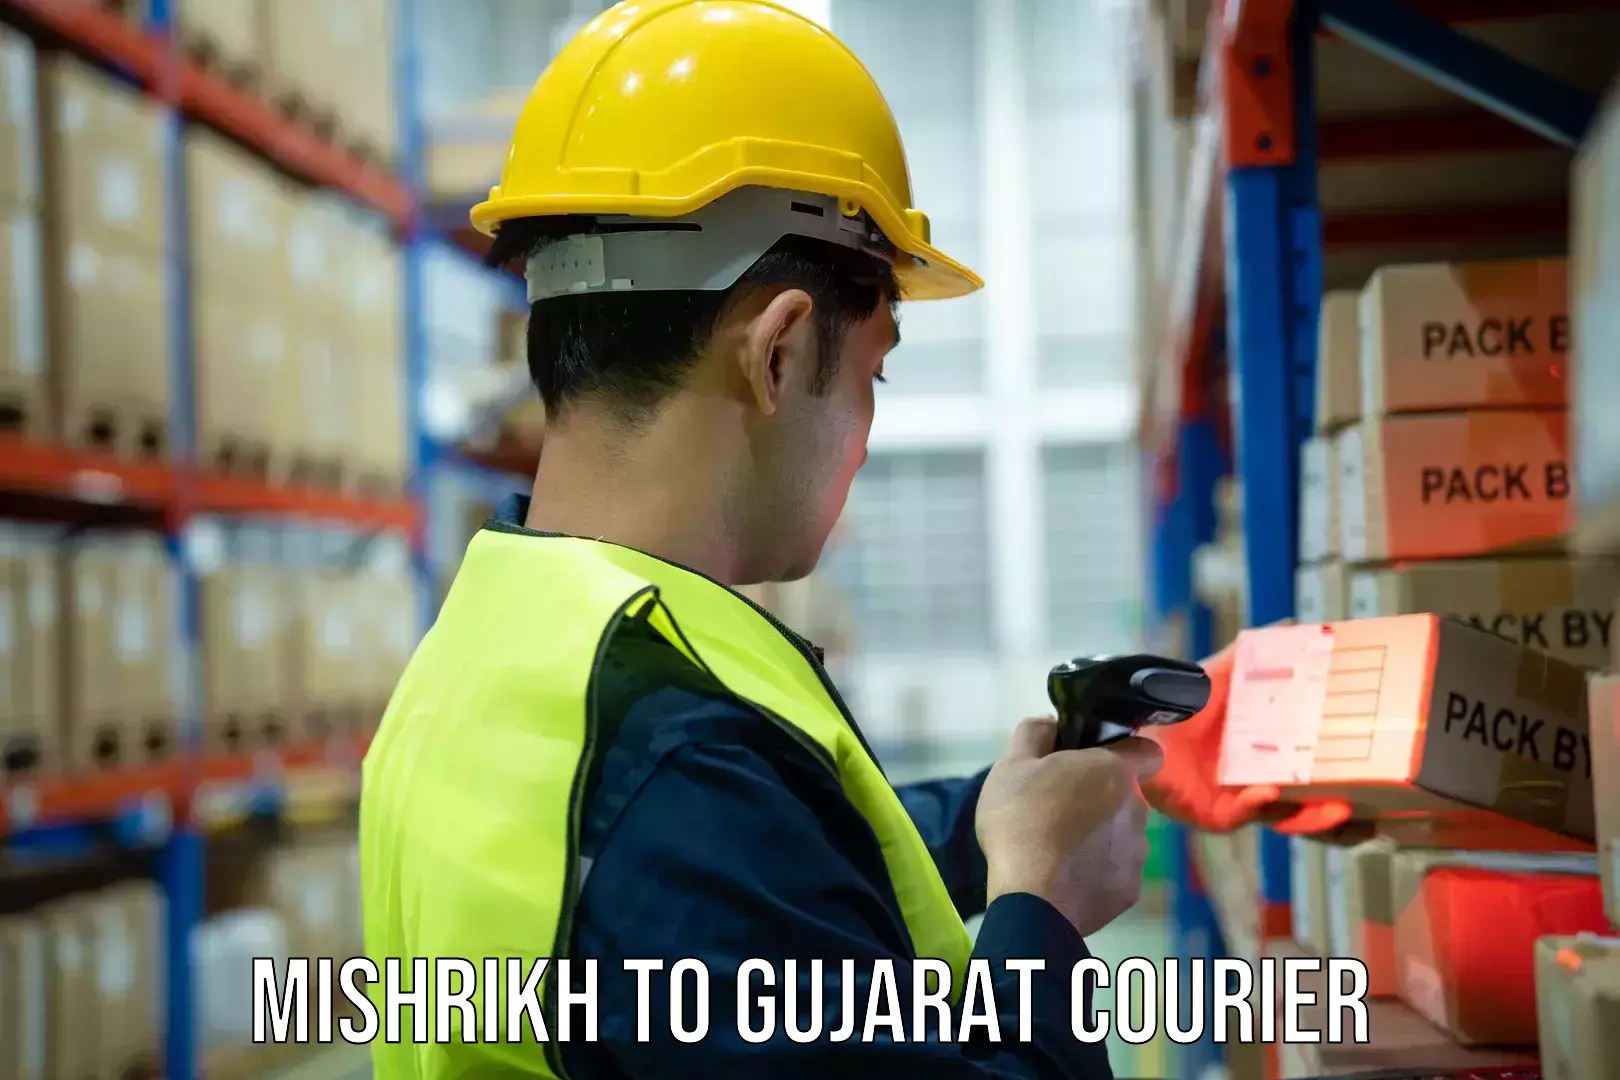 Urban courier service Mishrikh to Gujarat